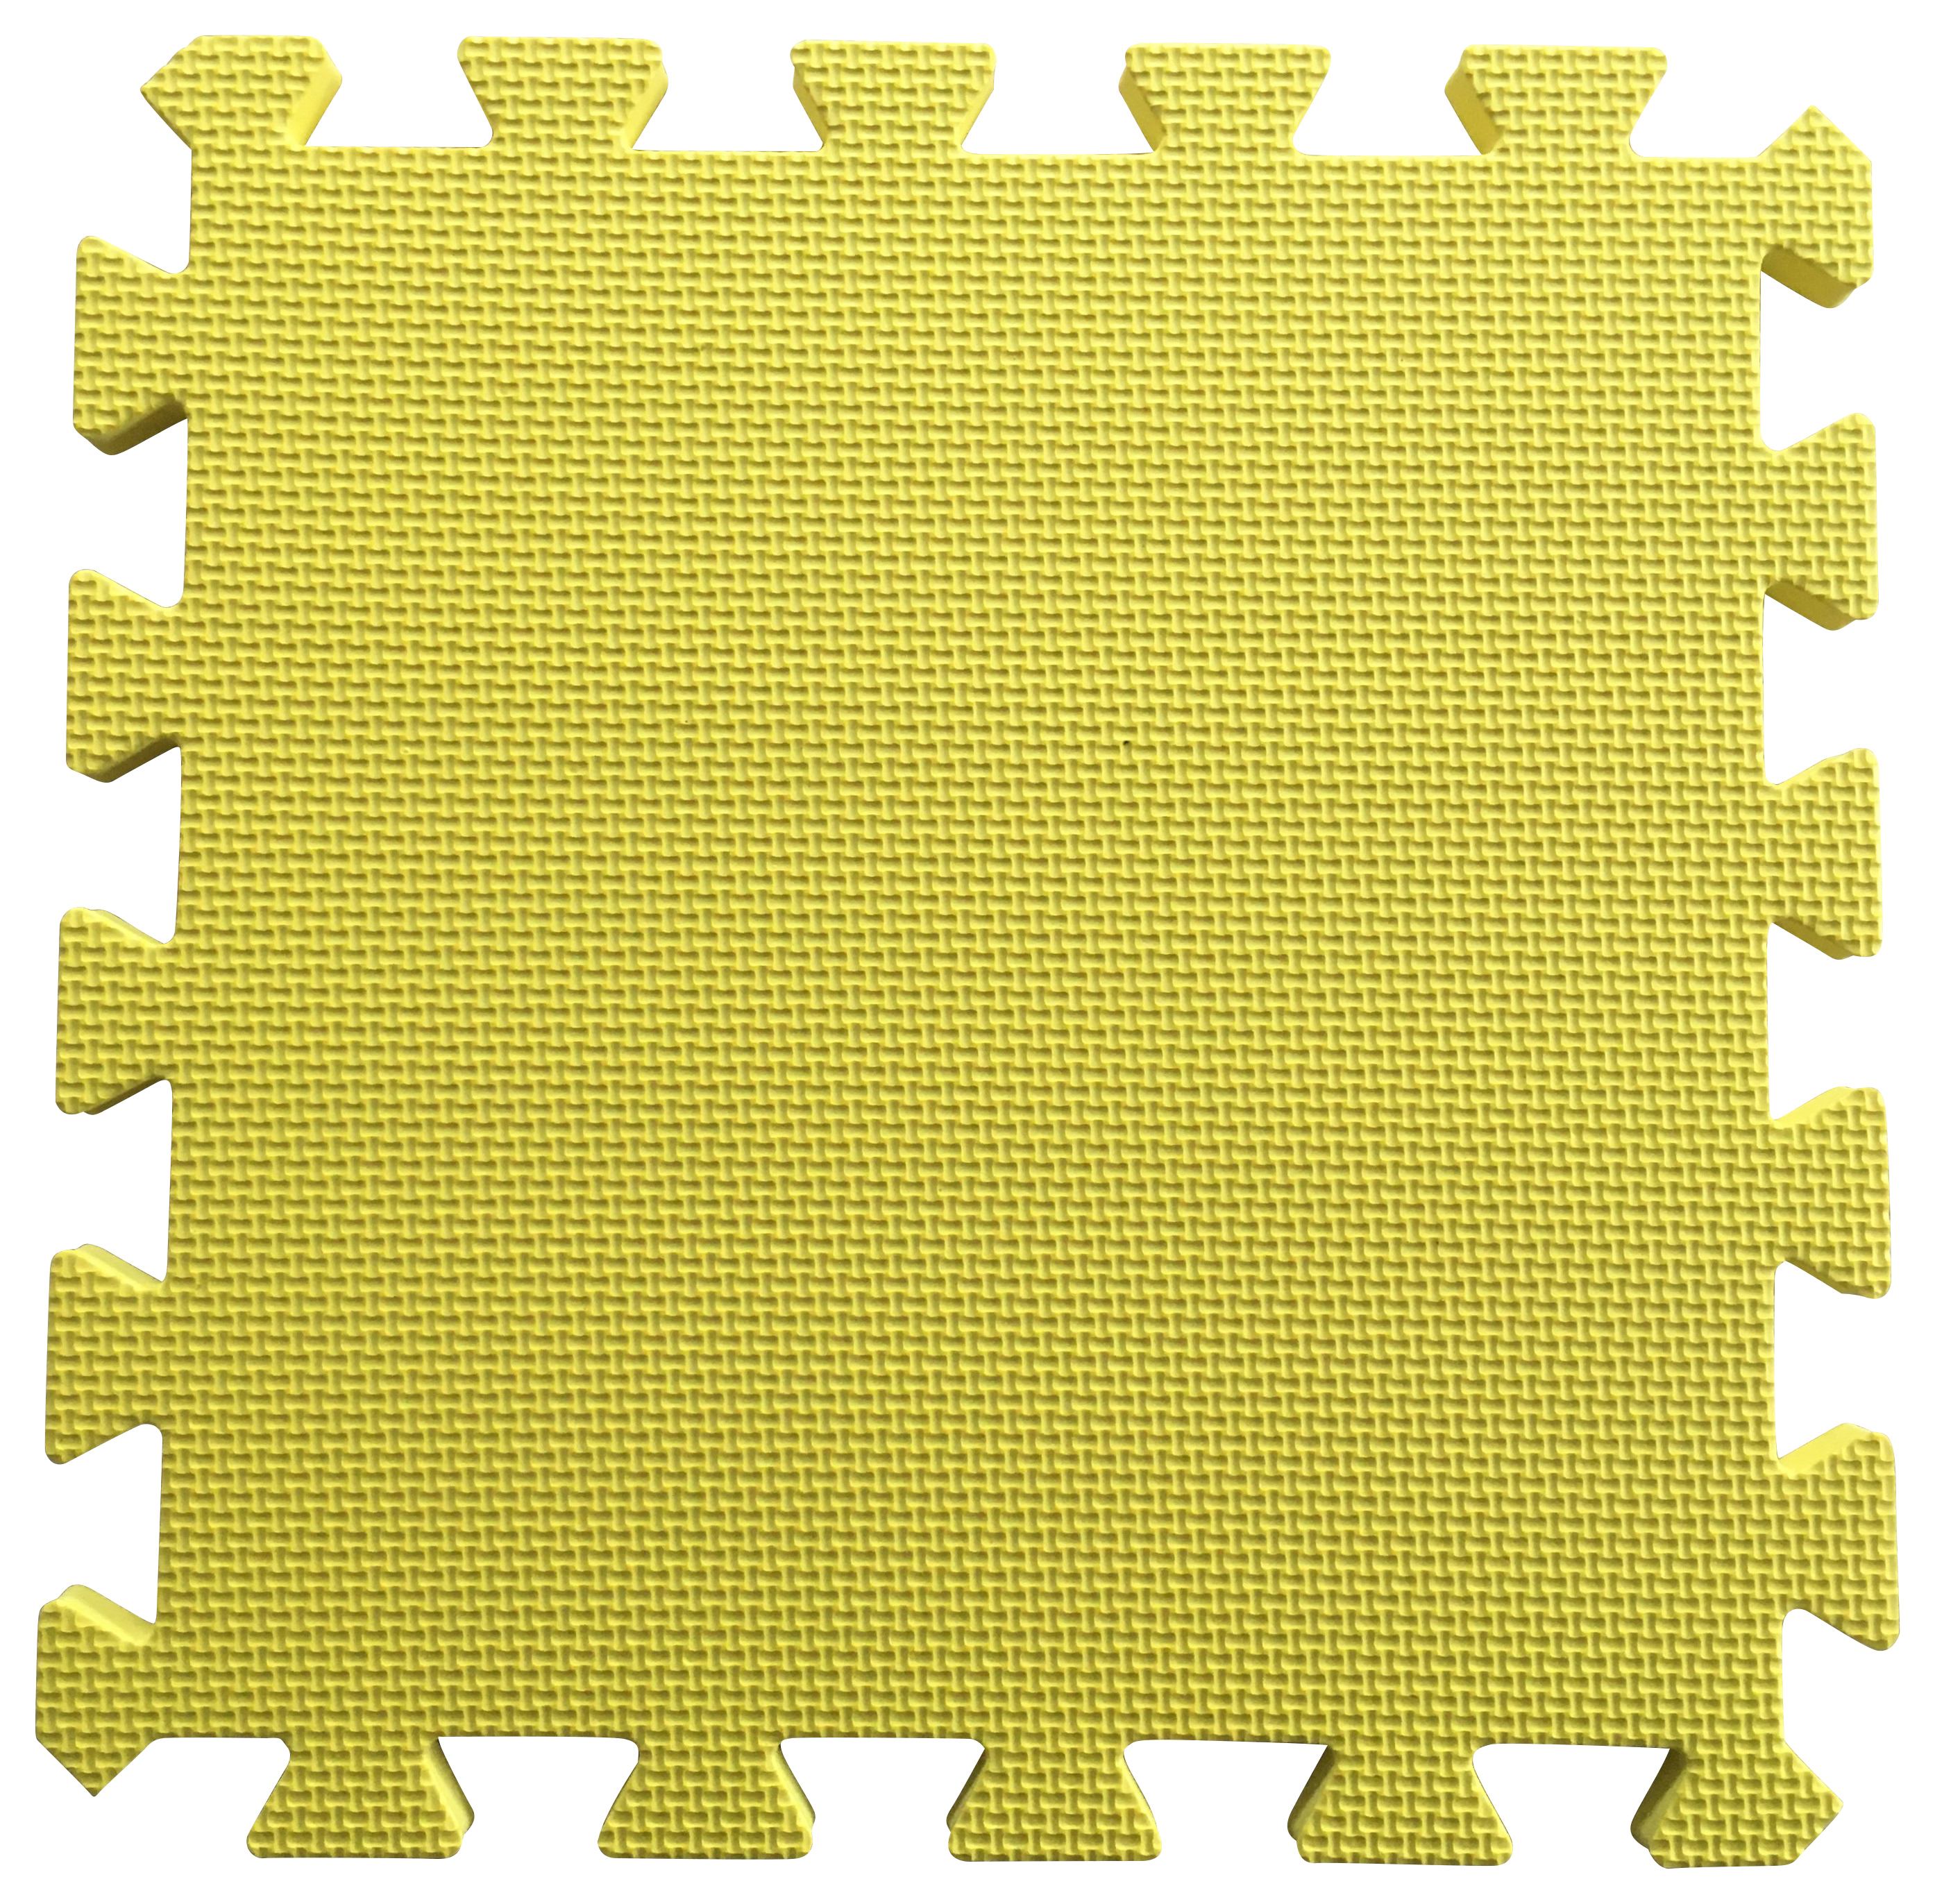 Warm Floor Yellow Interlocking Floor Tiles for Garden Buildings - 6 x 5ft